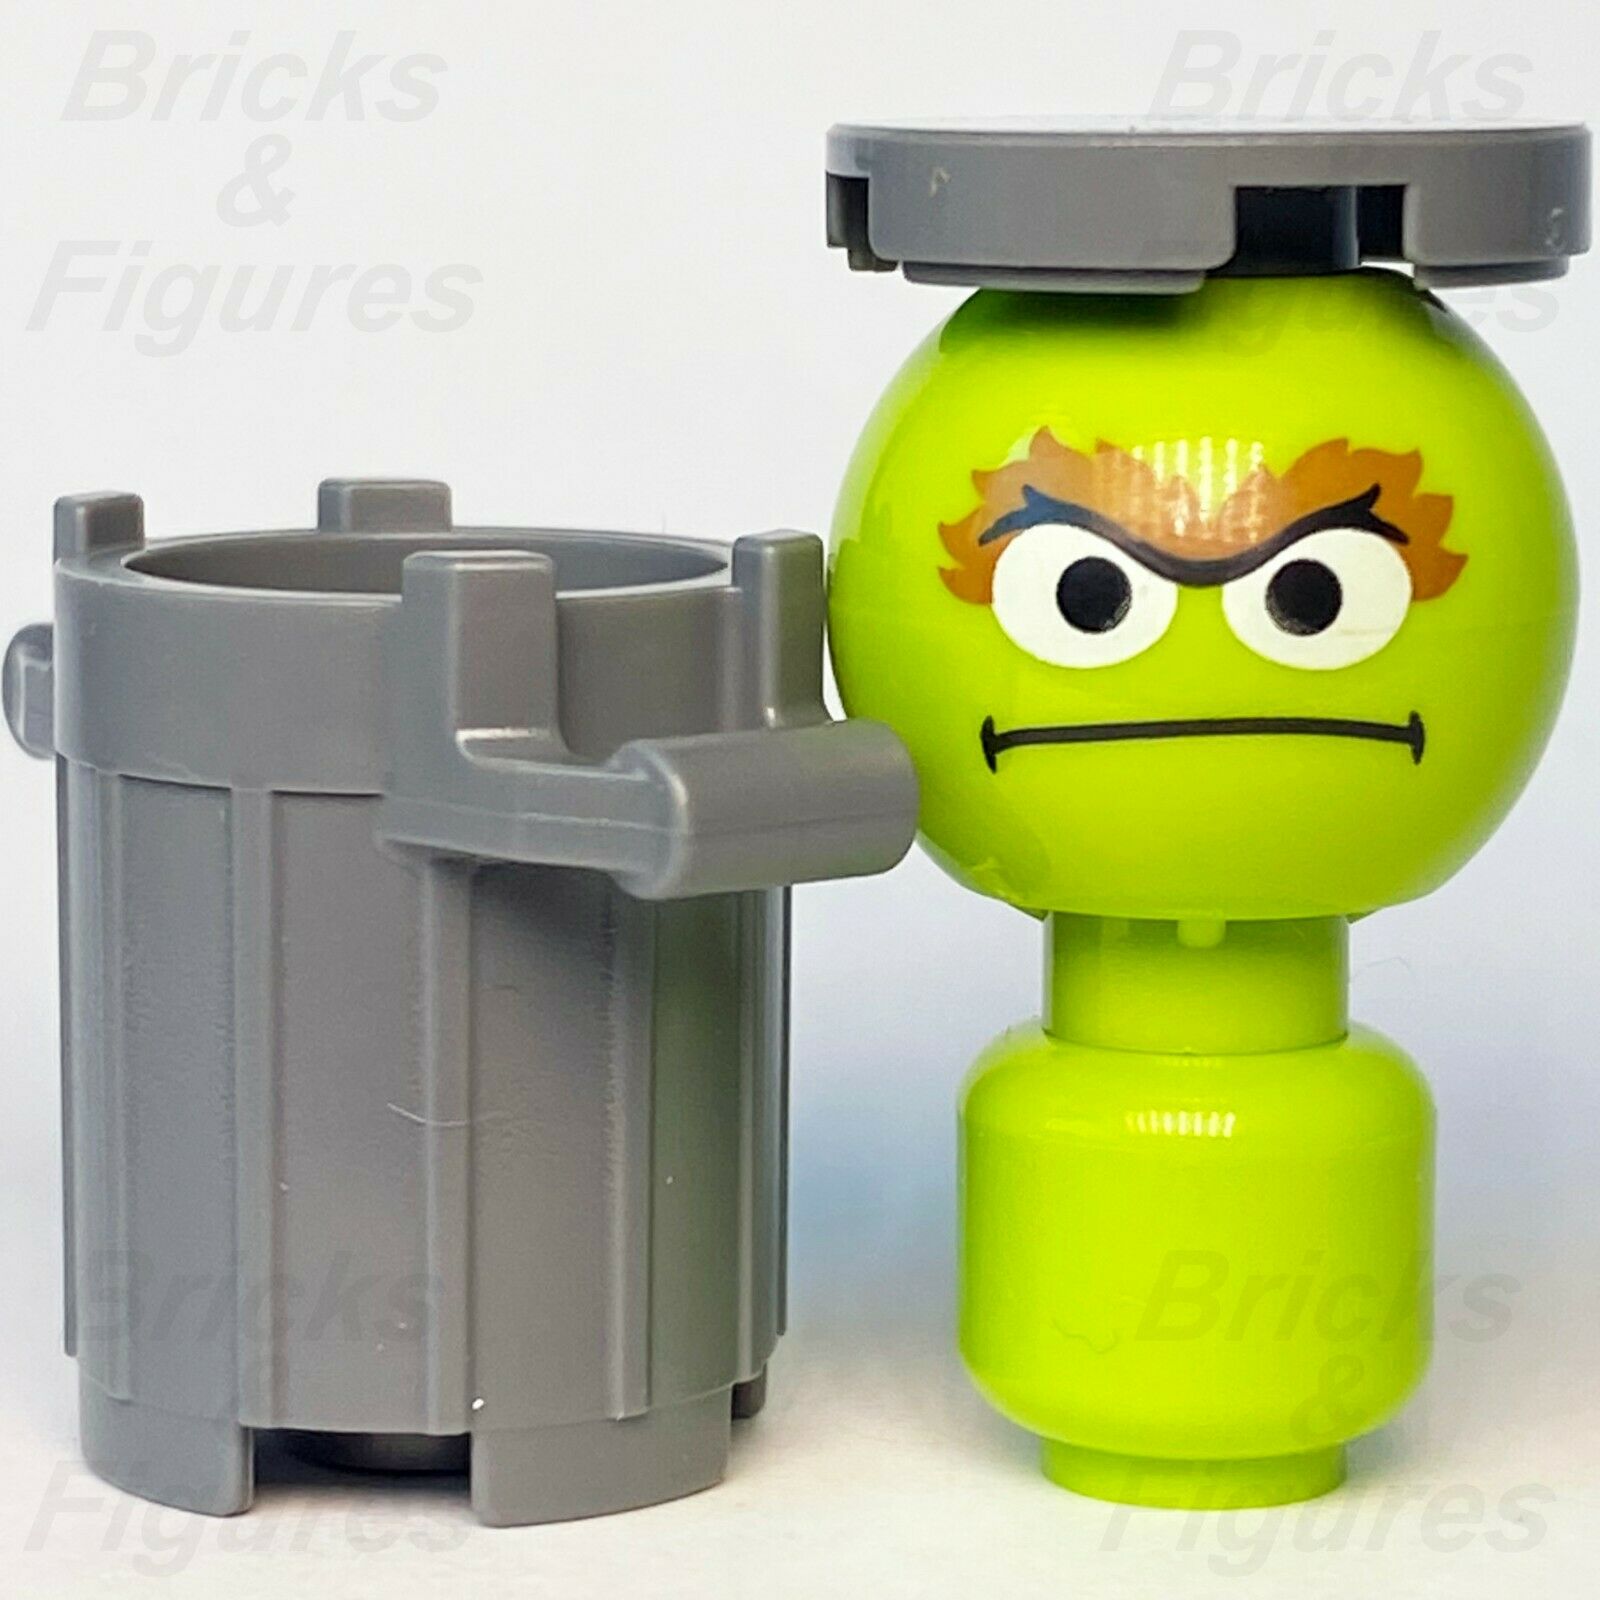 New Ideas LEGO Oscar The Grouch 123 Sesame Street Minifigure from set 21324 - Bricks & Figures